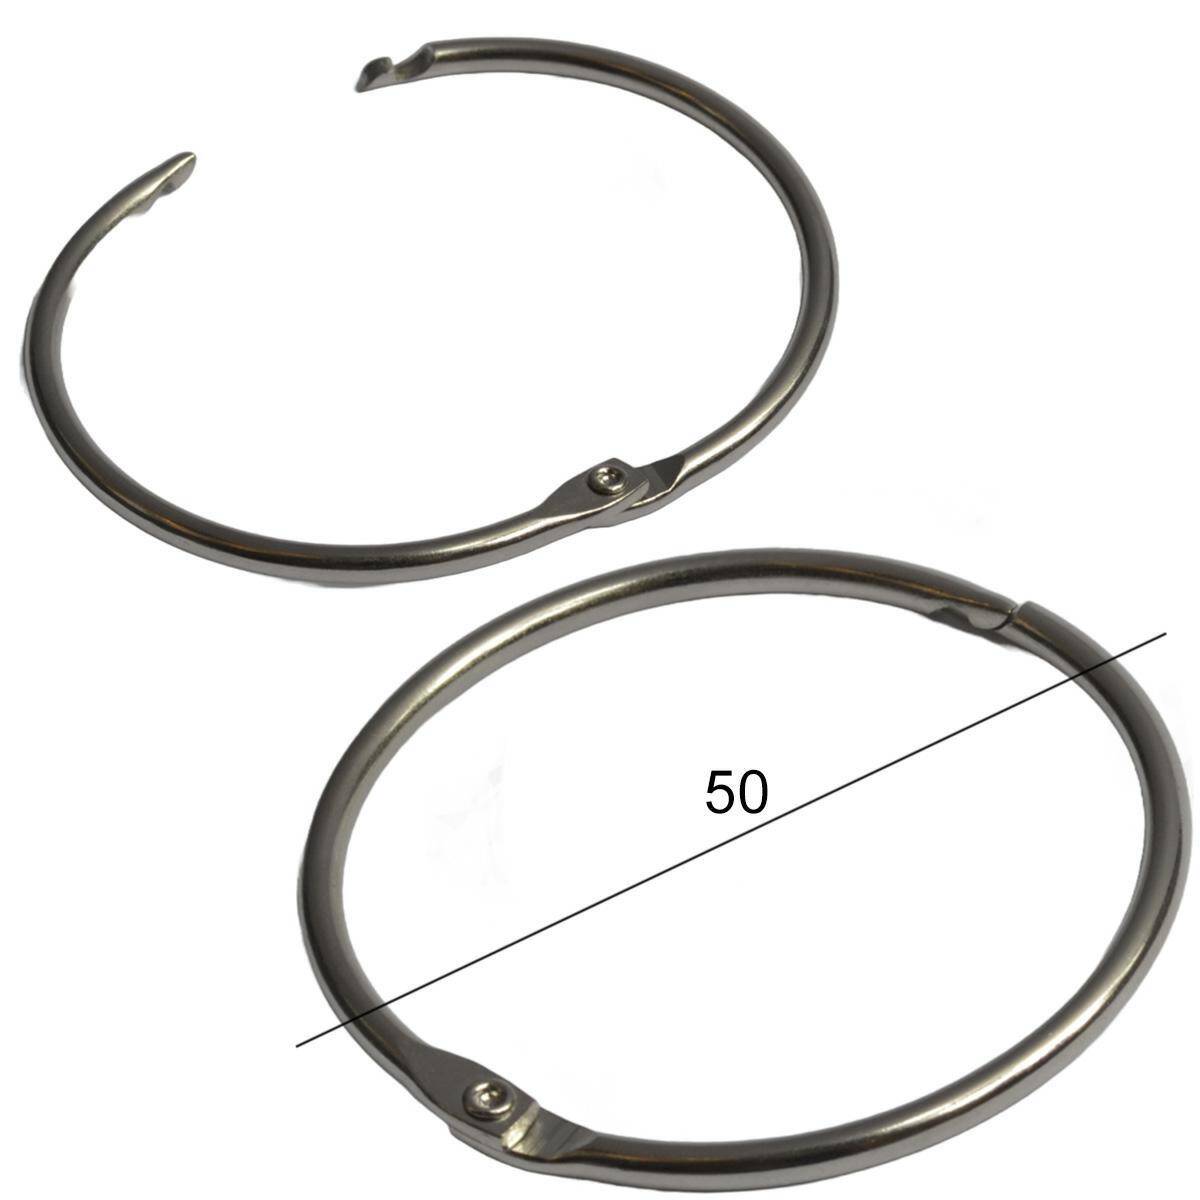 Key rings - detachable - 50 mm